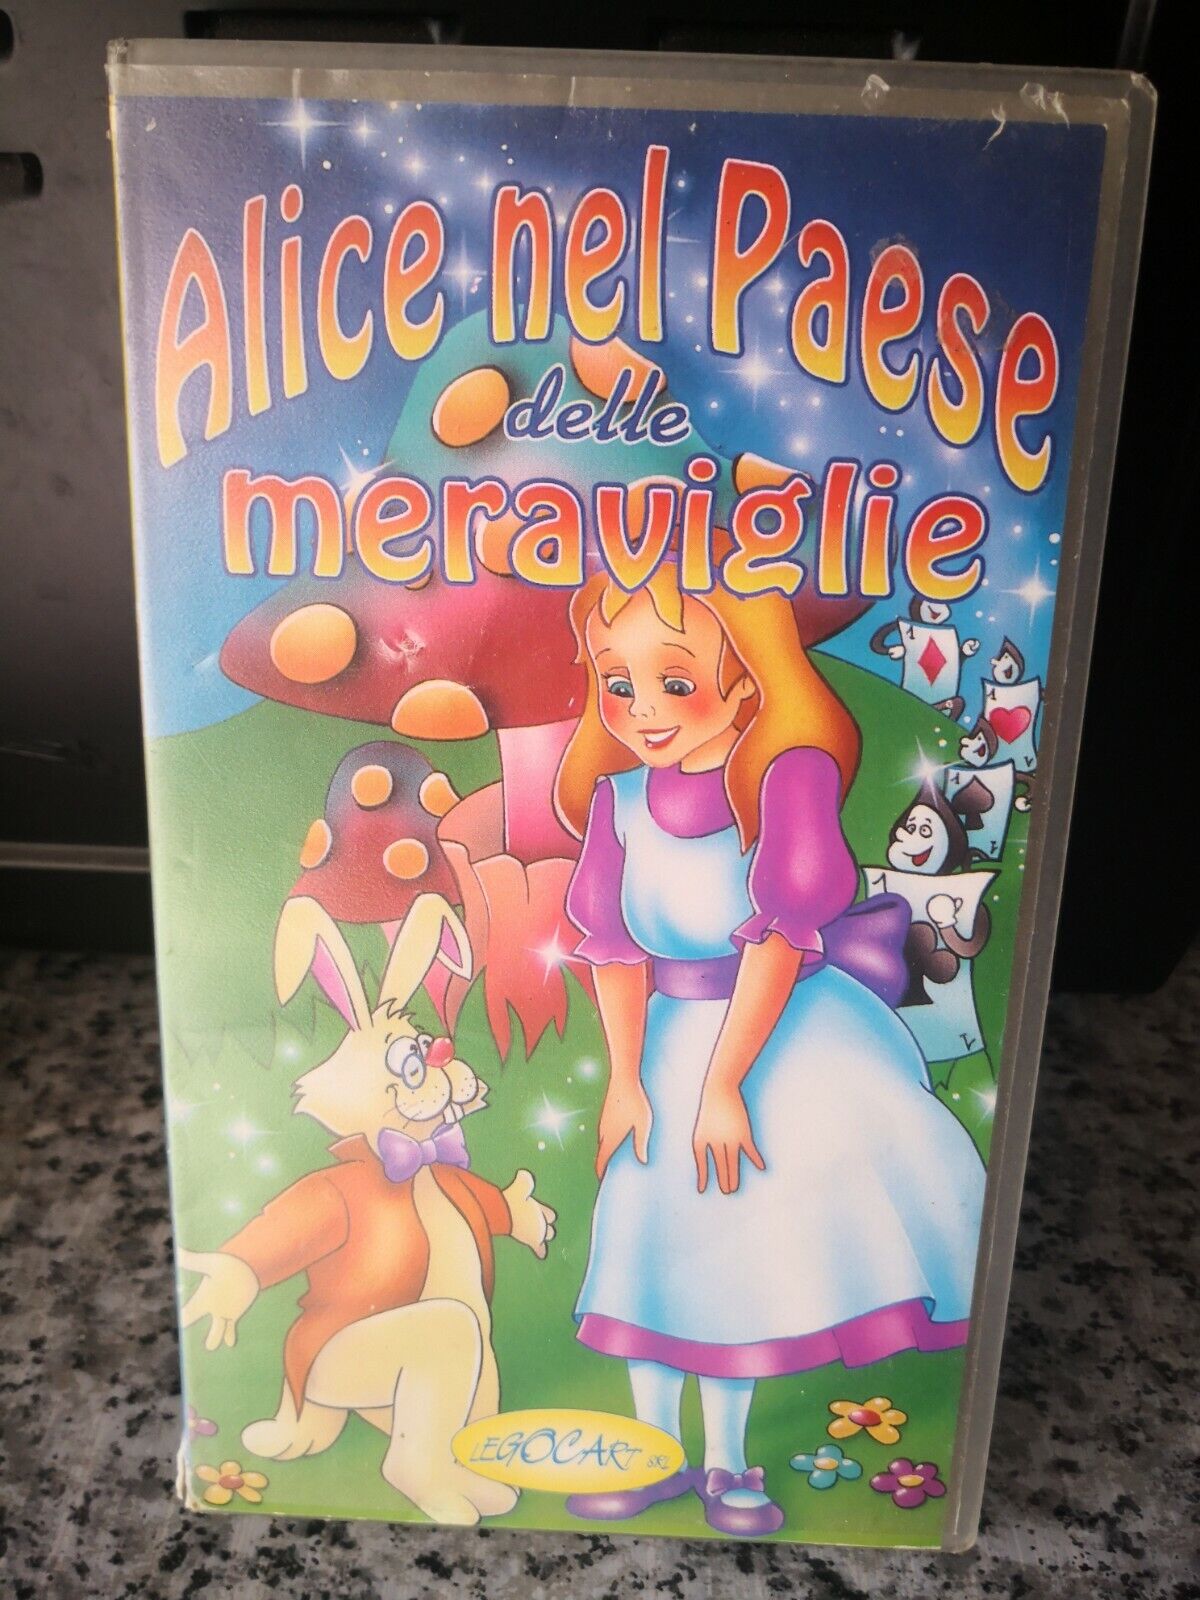 Alice nel paese delle meraviglie - vhs -1994 - Legocart -F